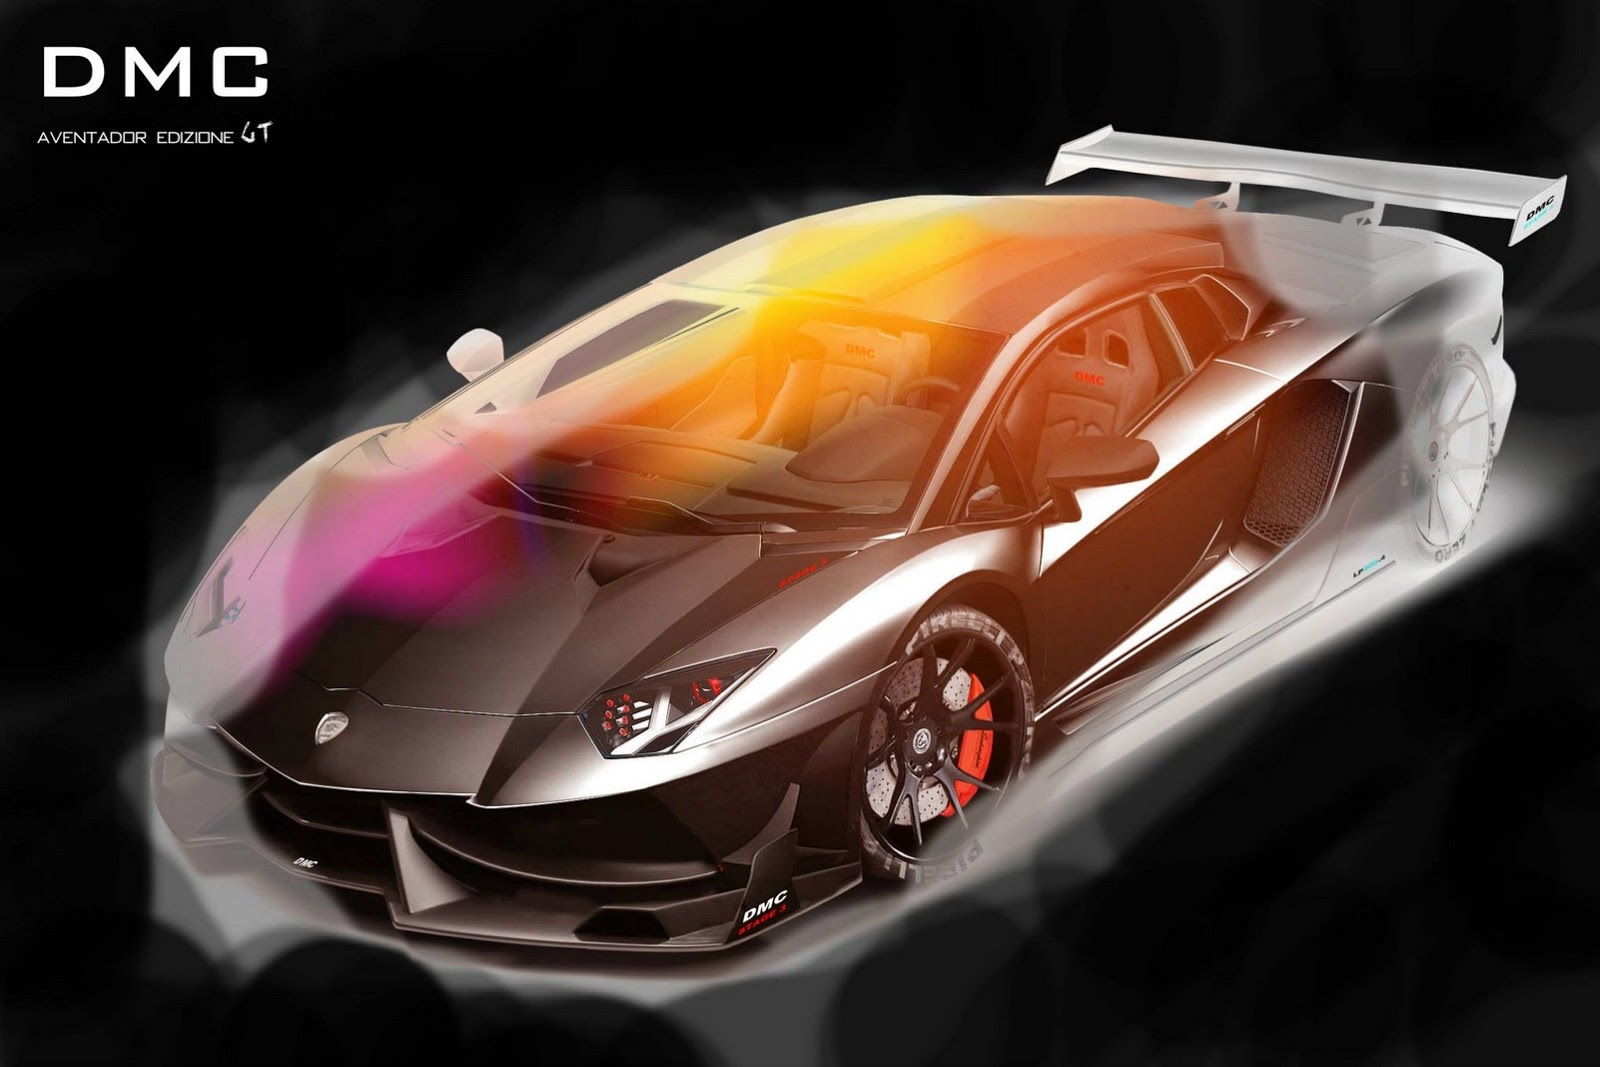 صور تشويقية لامبورجيني افنتادور كوبيه بالتطورات الجديدة Lamborghini Aventador